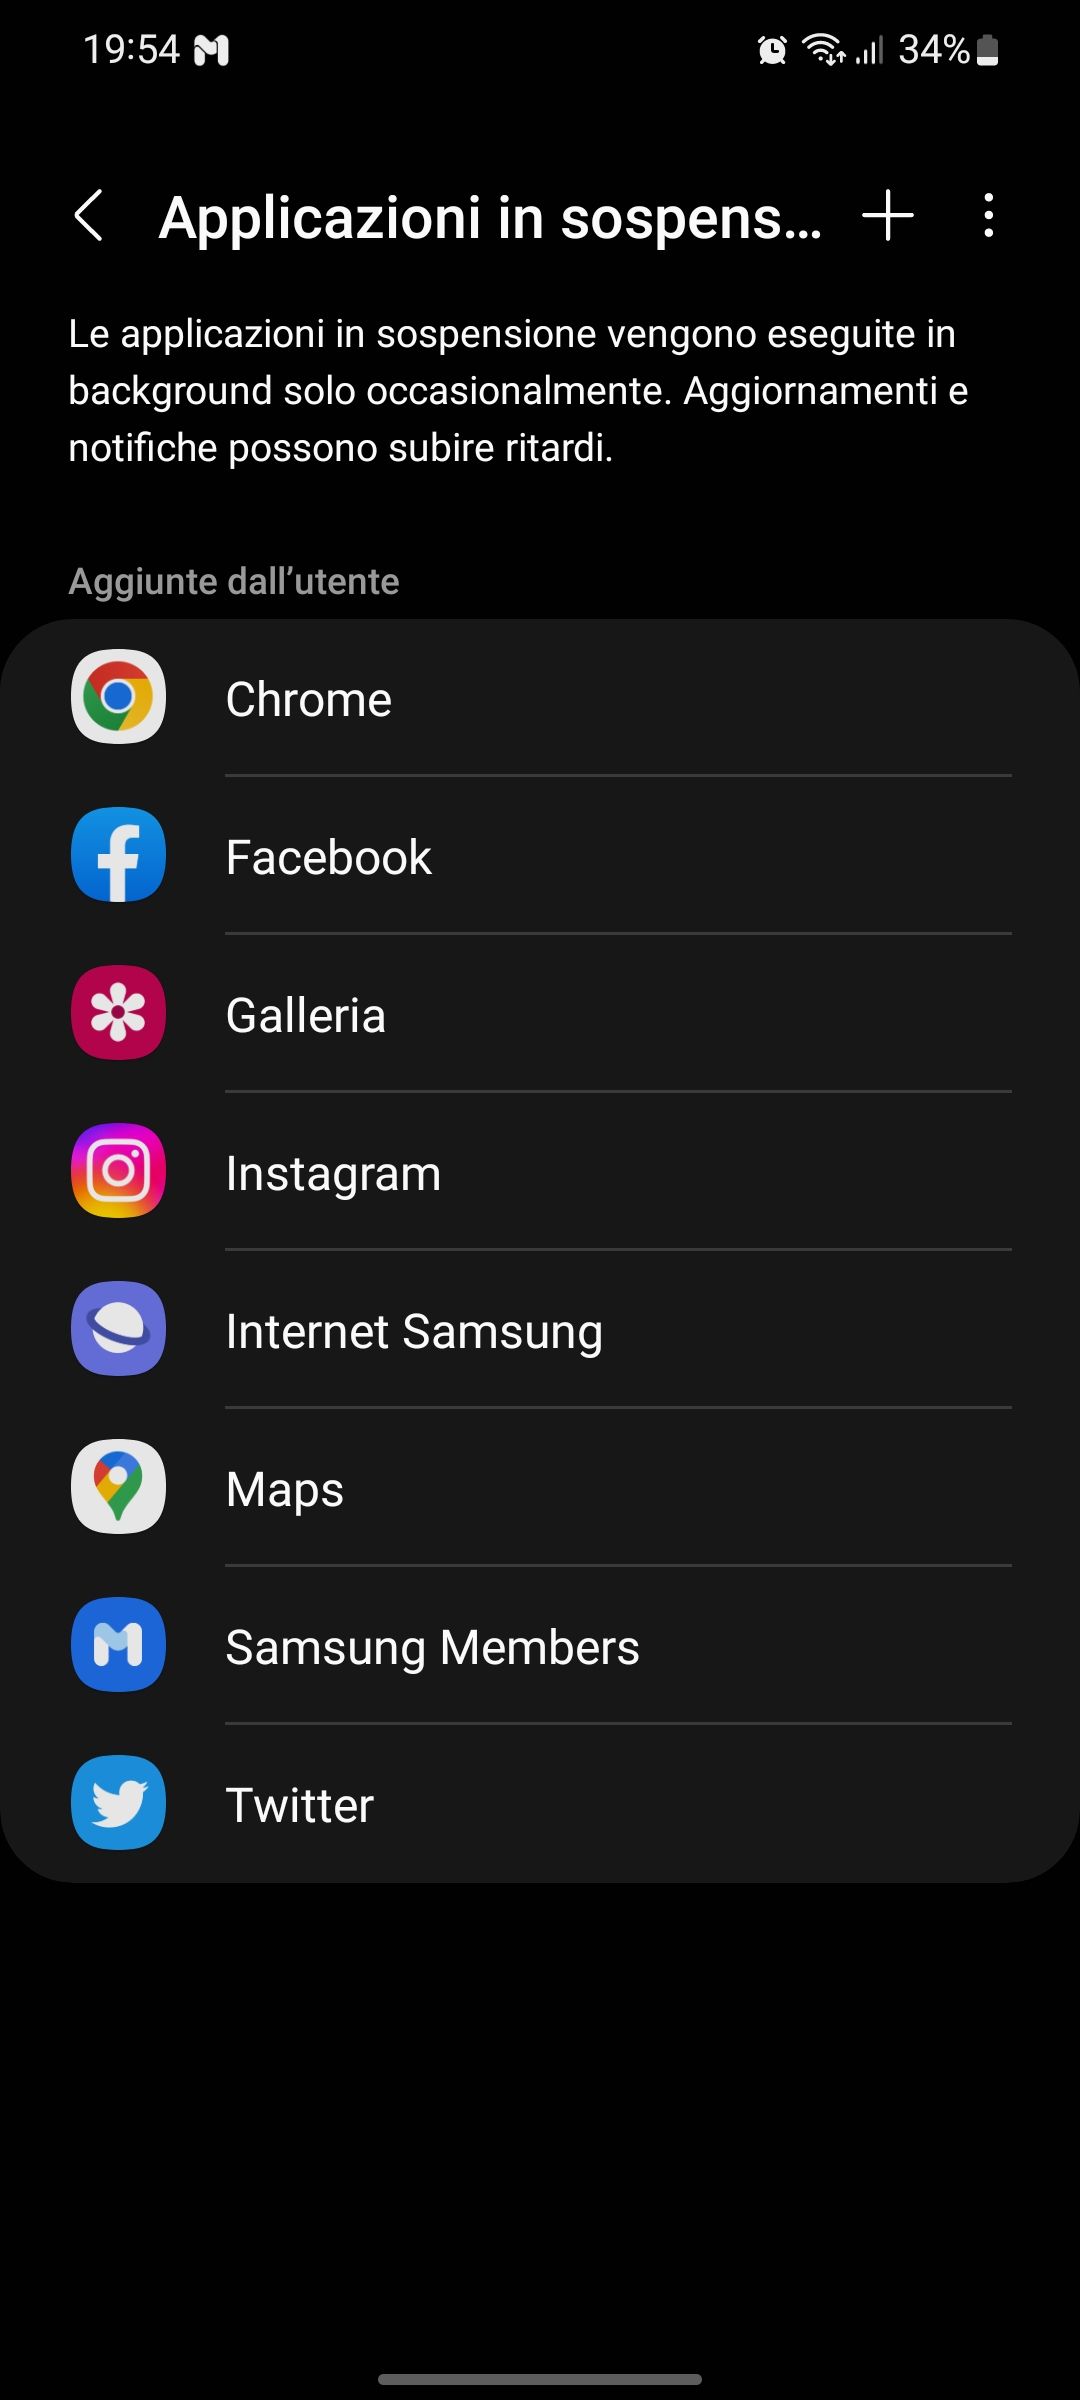 Applicazioni in sospensione - Samsung Community